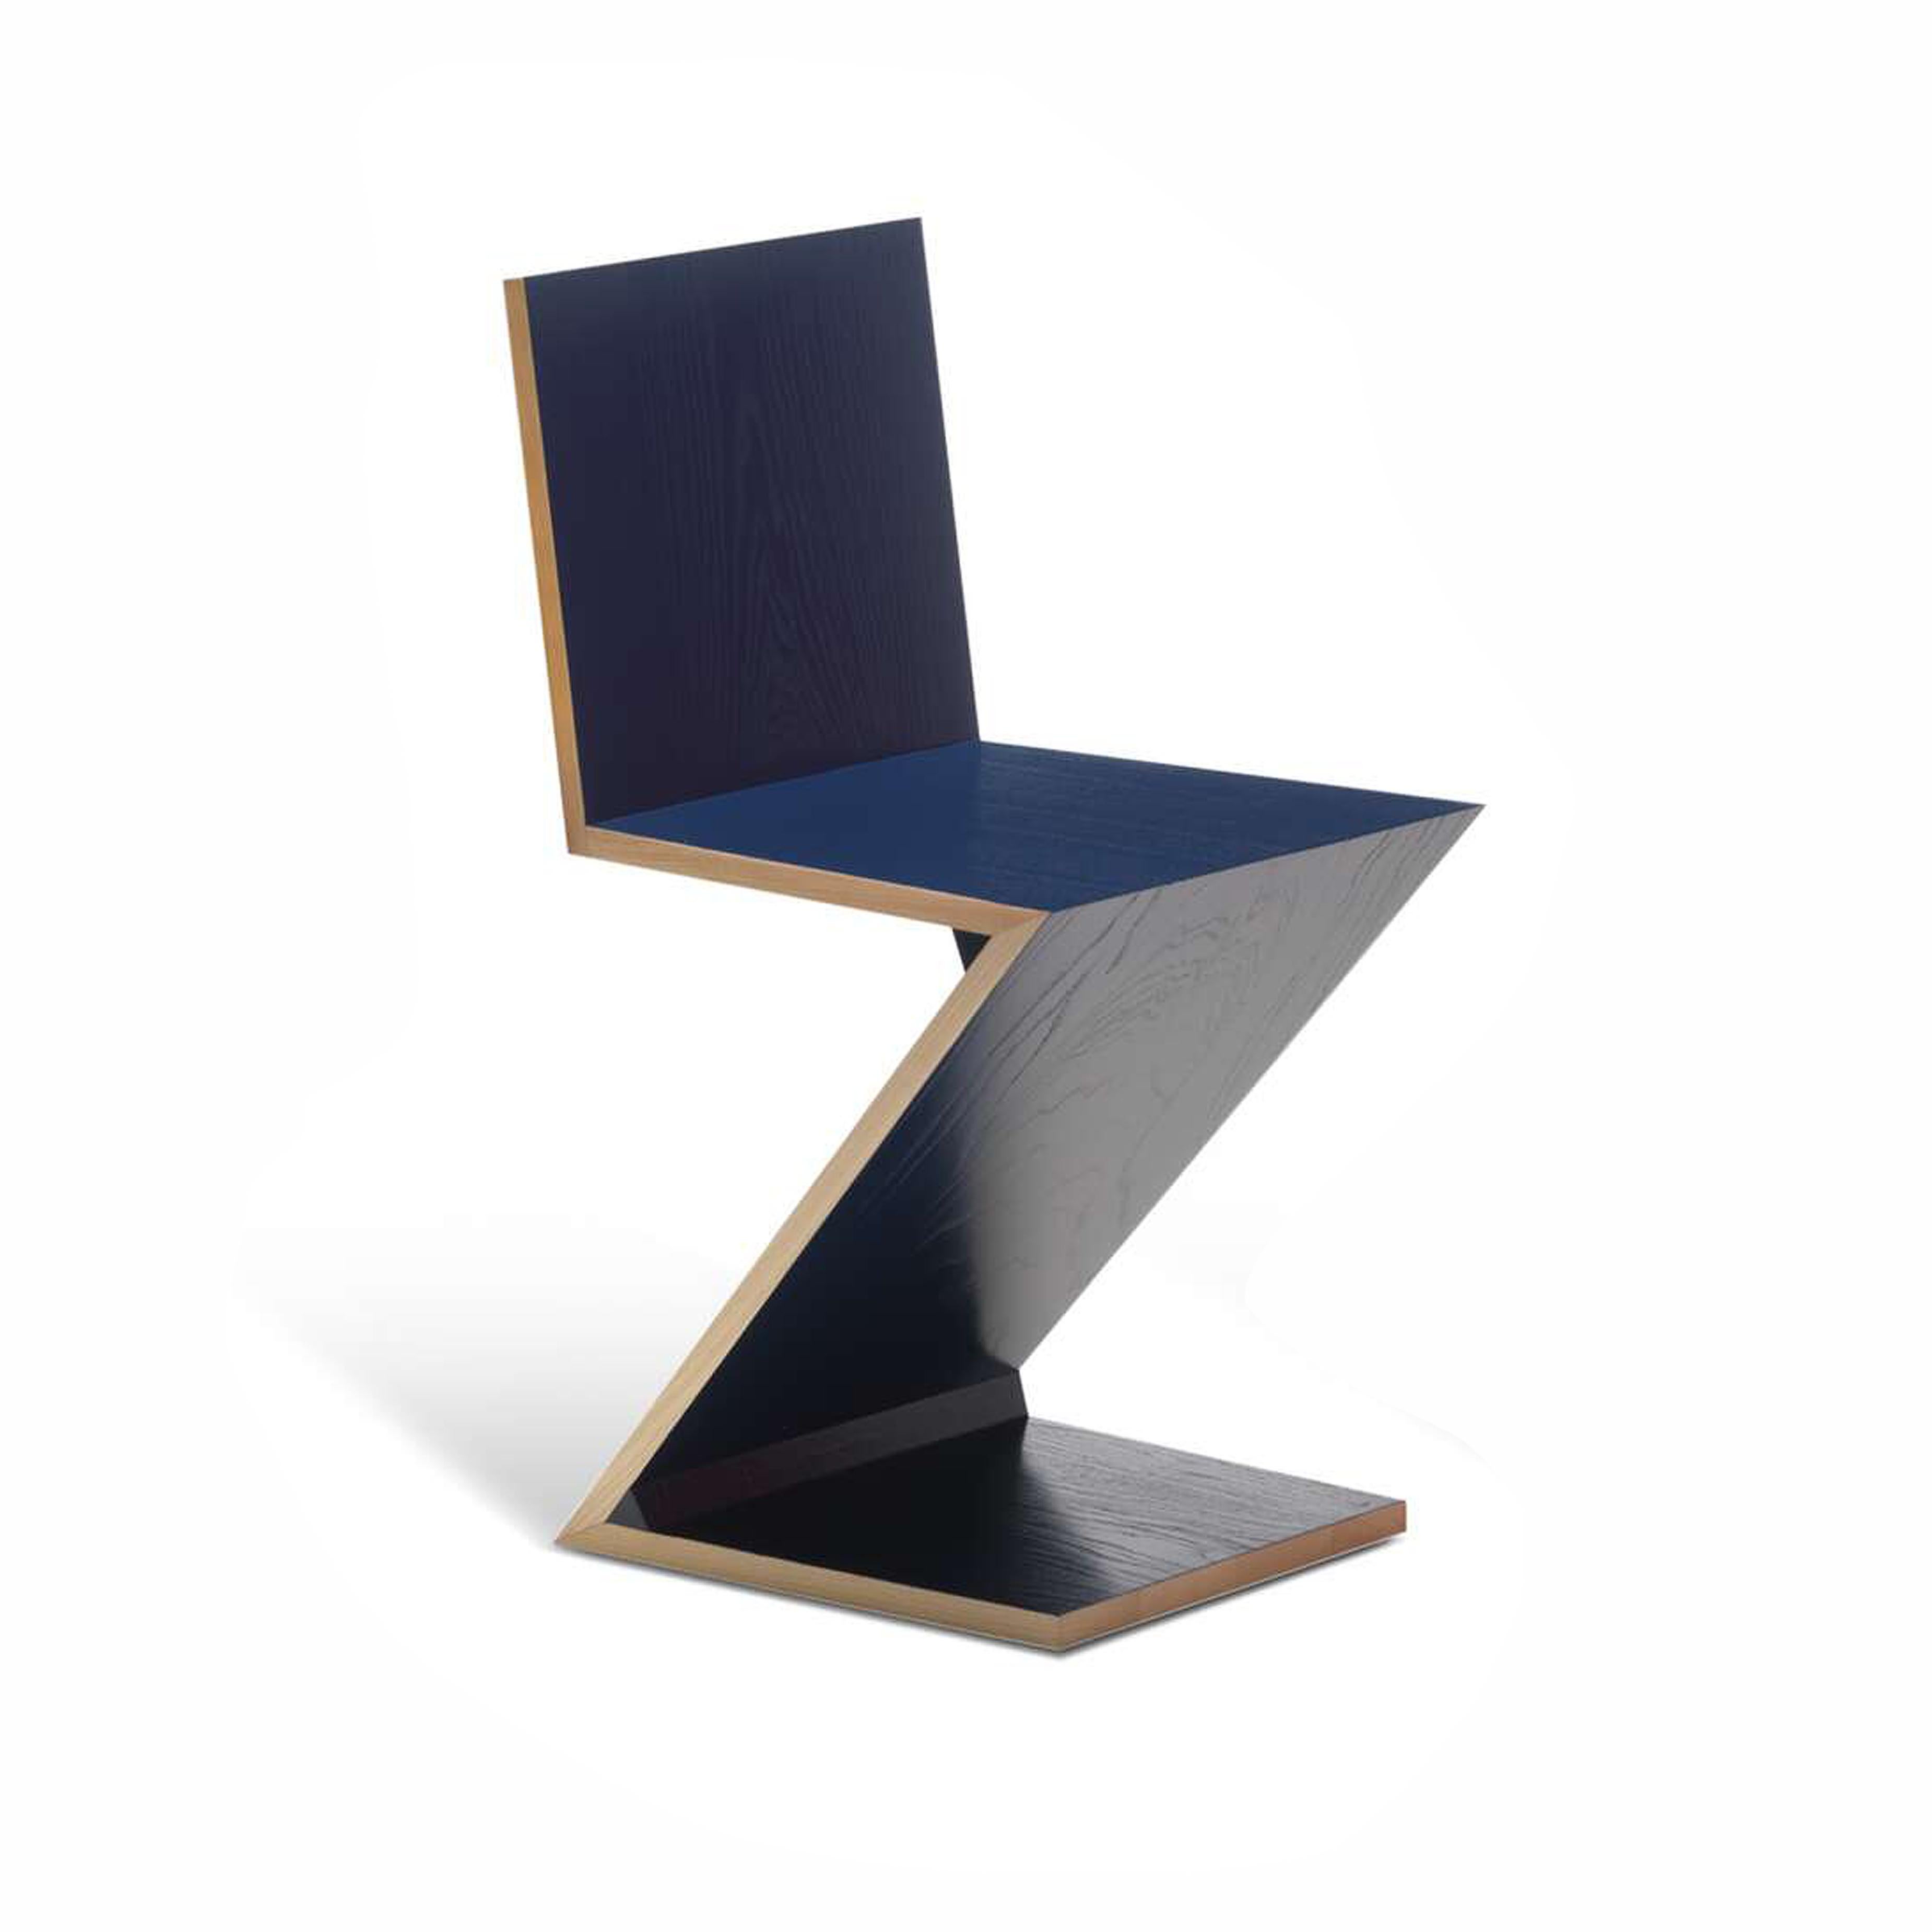 Stühle, entworfen von Gerrit Thomas Rietveld im Jahr 1934. Neuauflage 1973/ 2011.
Hergestellt von Cassina in Italien.

Dieser von Gerrit Rietveld entworfene Stuhl ist ein frühes Beispiel für eine freitragende Sitzfläche und besteht aus vier